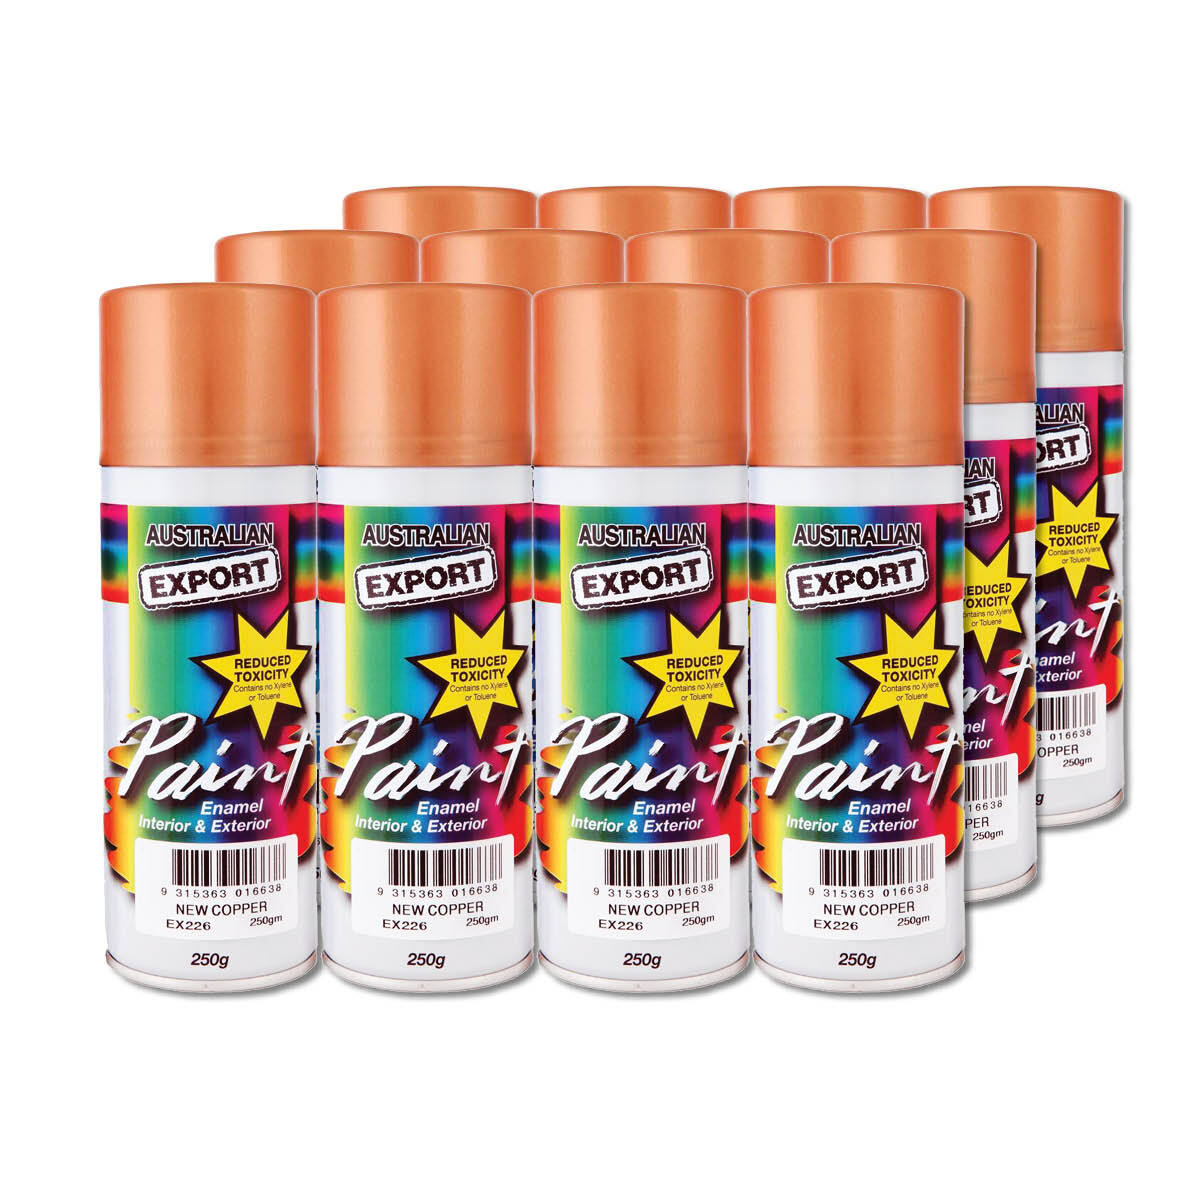 Australian Export 12PK 250gm Aerosol Spray Paint Cans [Colour: New Copper]